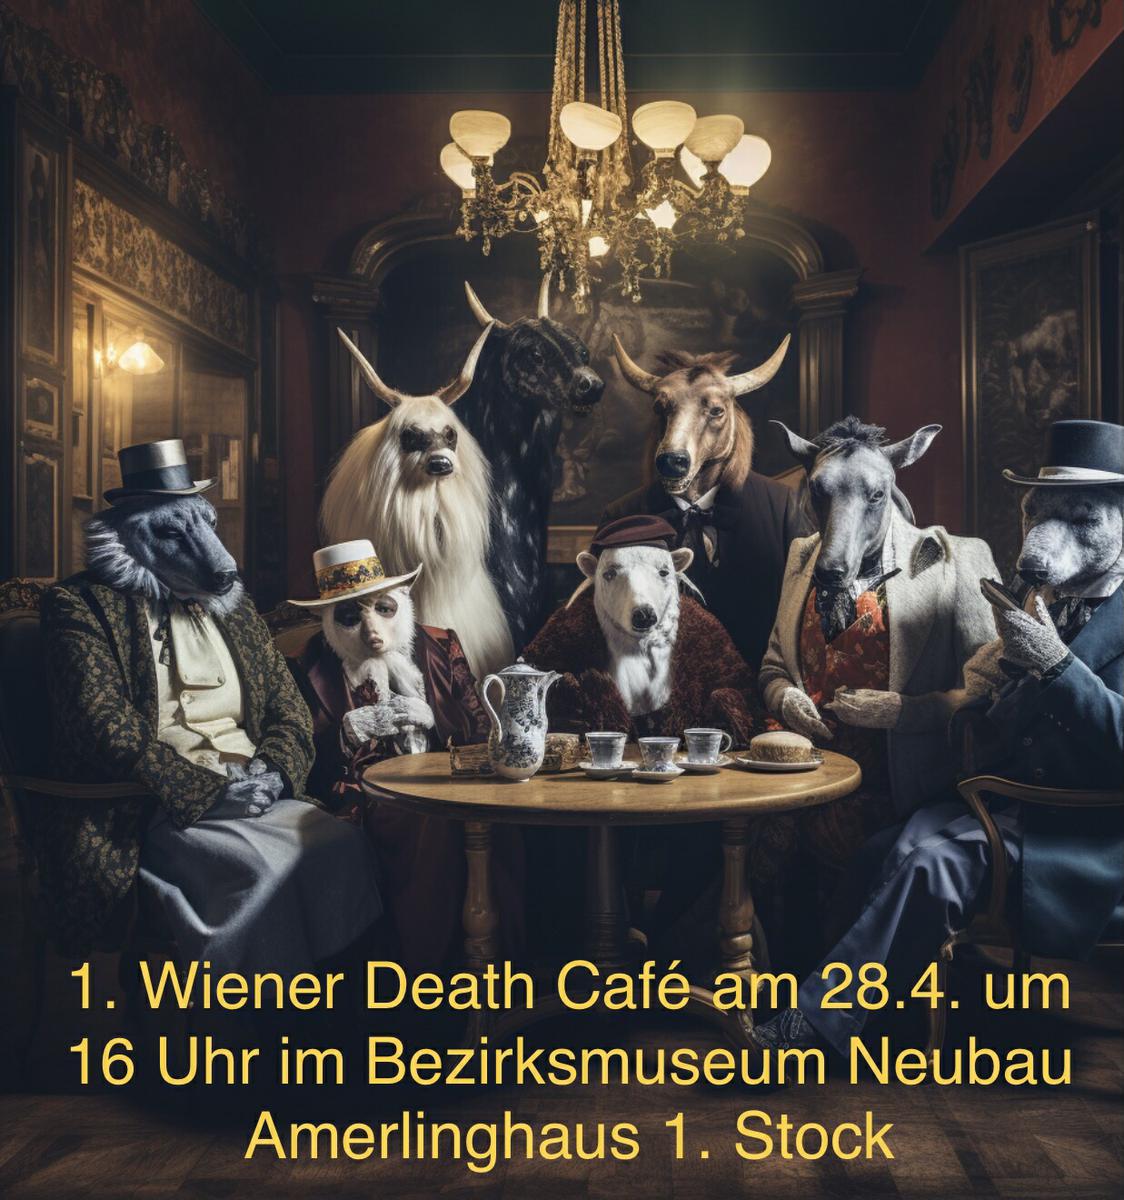 1. Wiener Death Cafe 